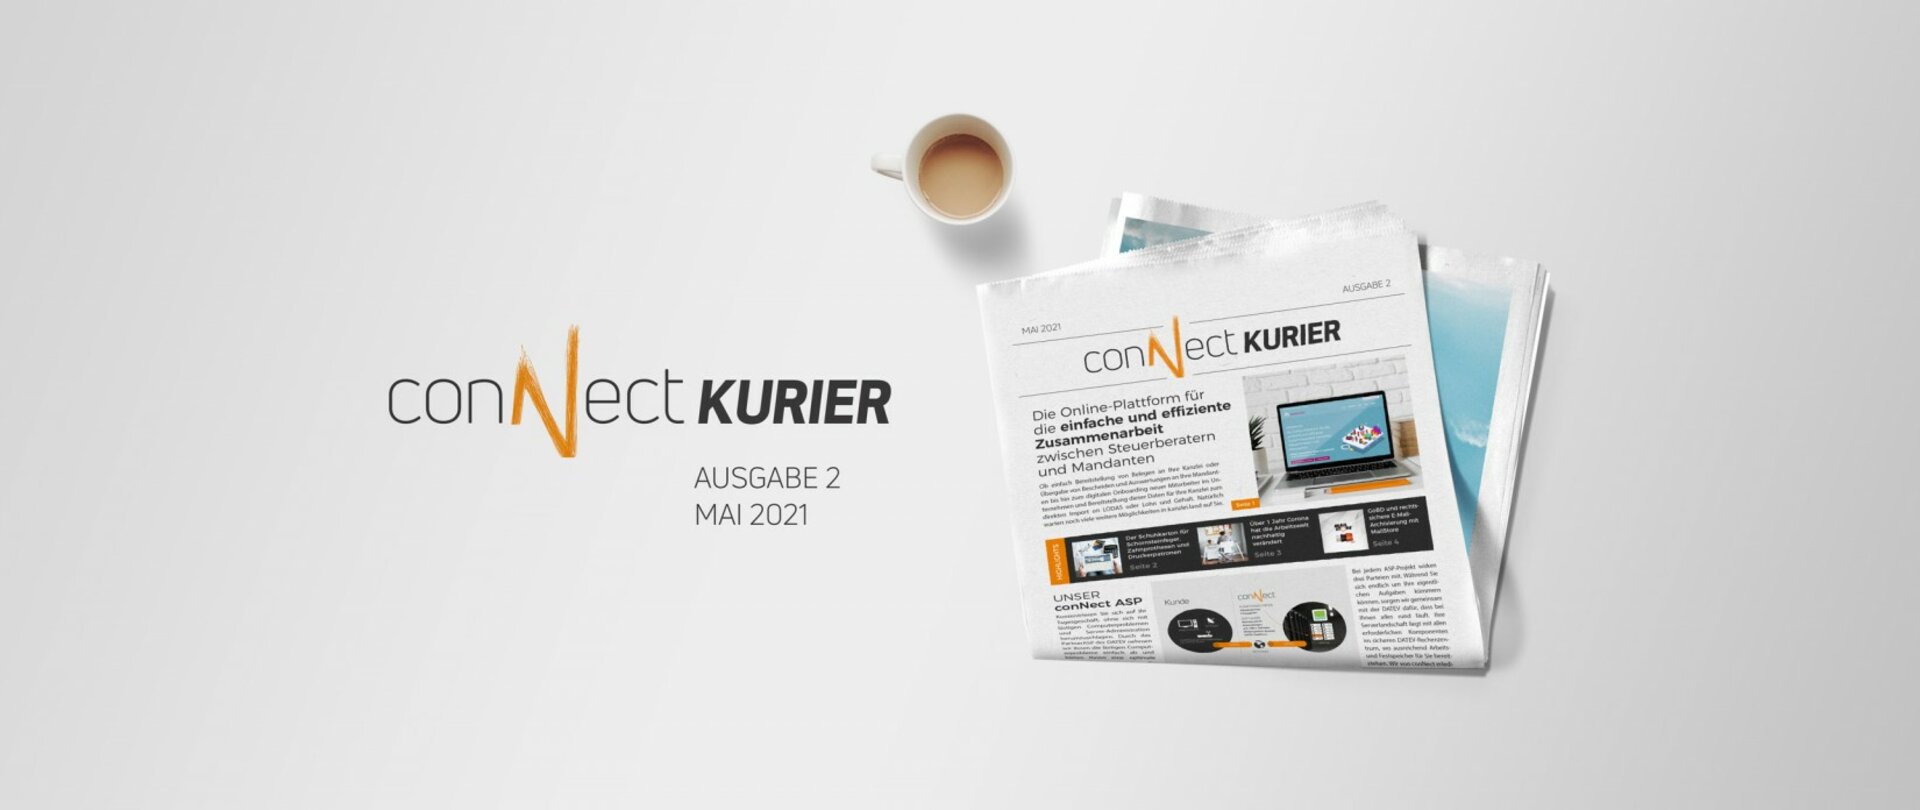 Mood-Image für conNect Kurier - Ausgabe 2 / Mai 2021